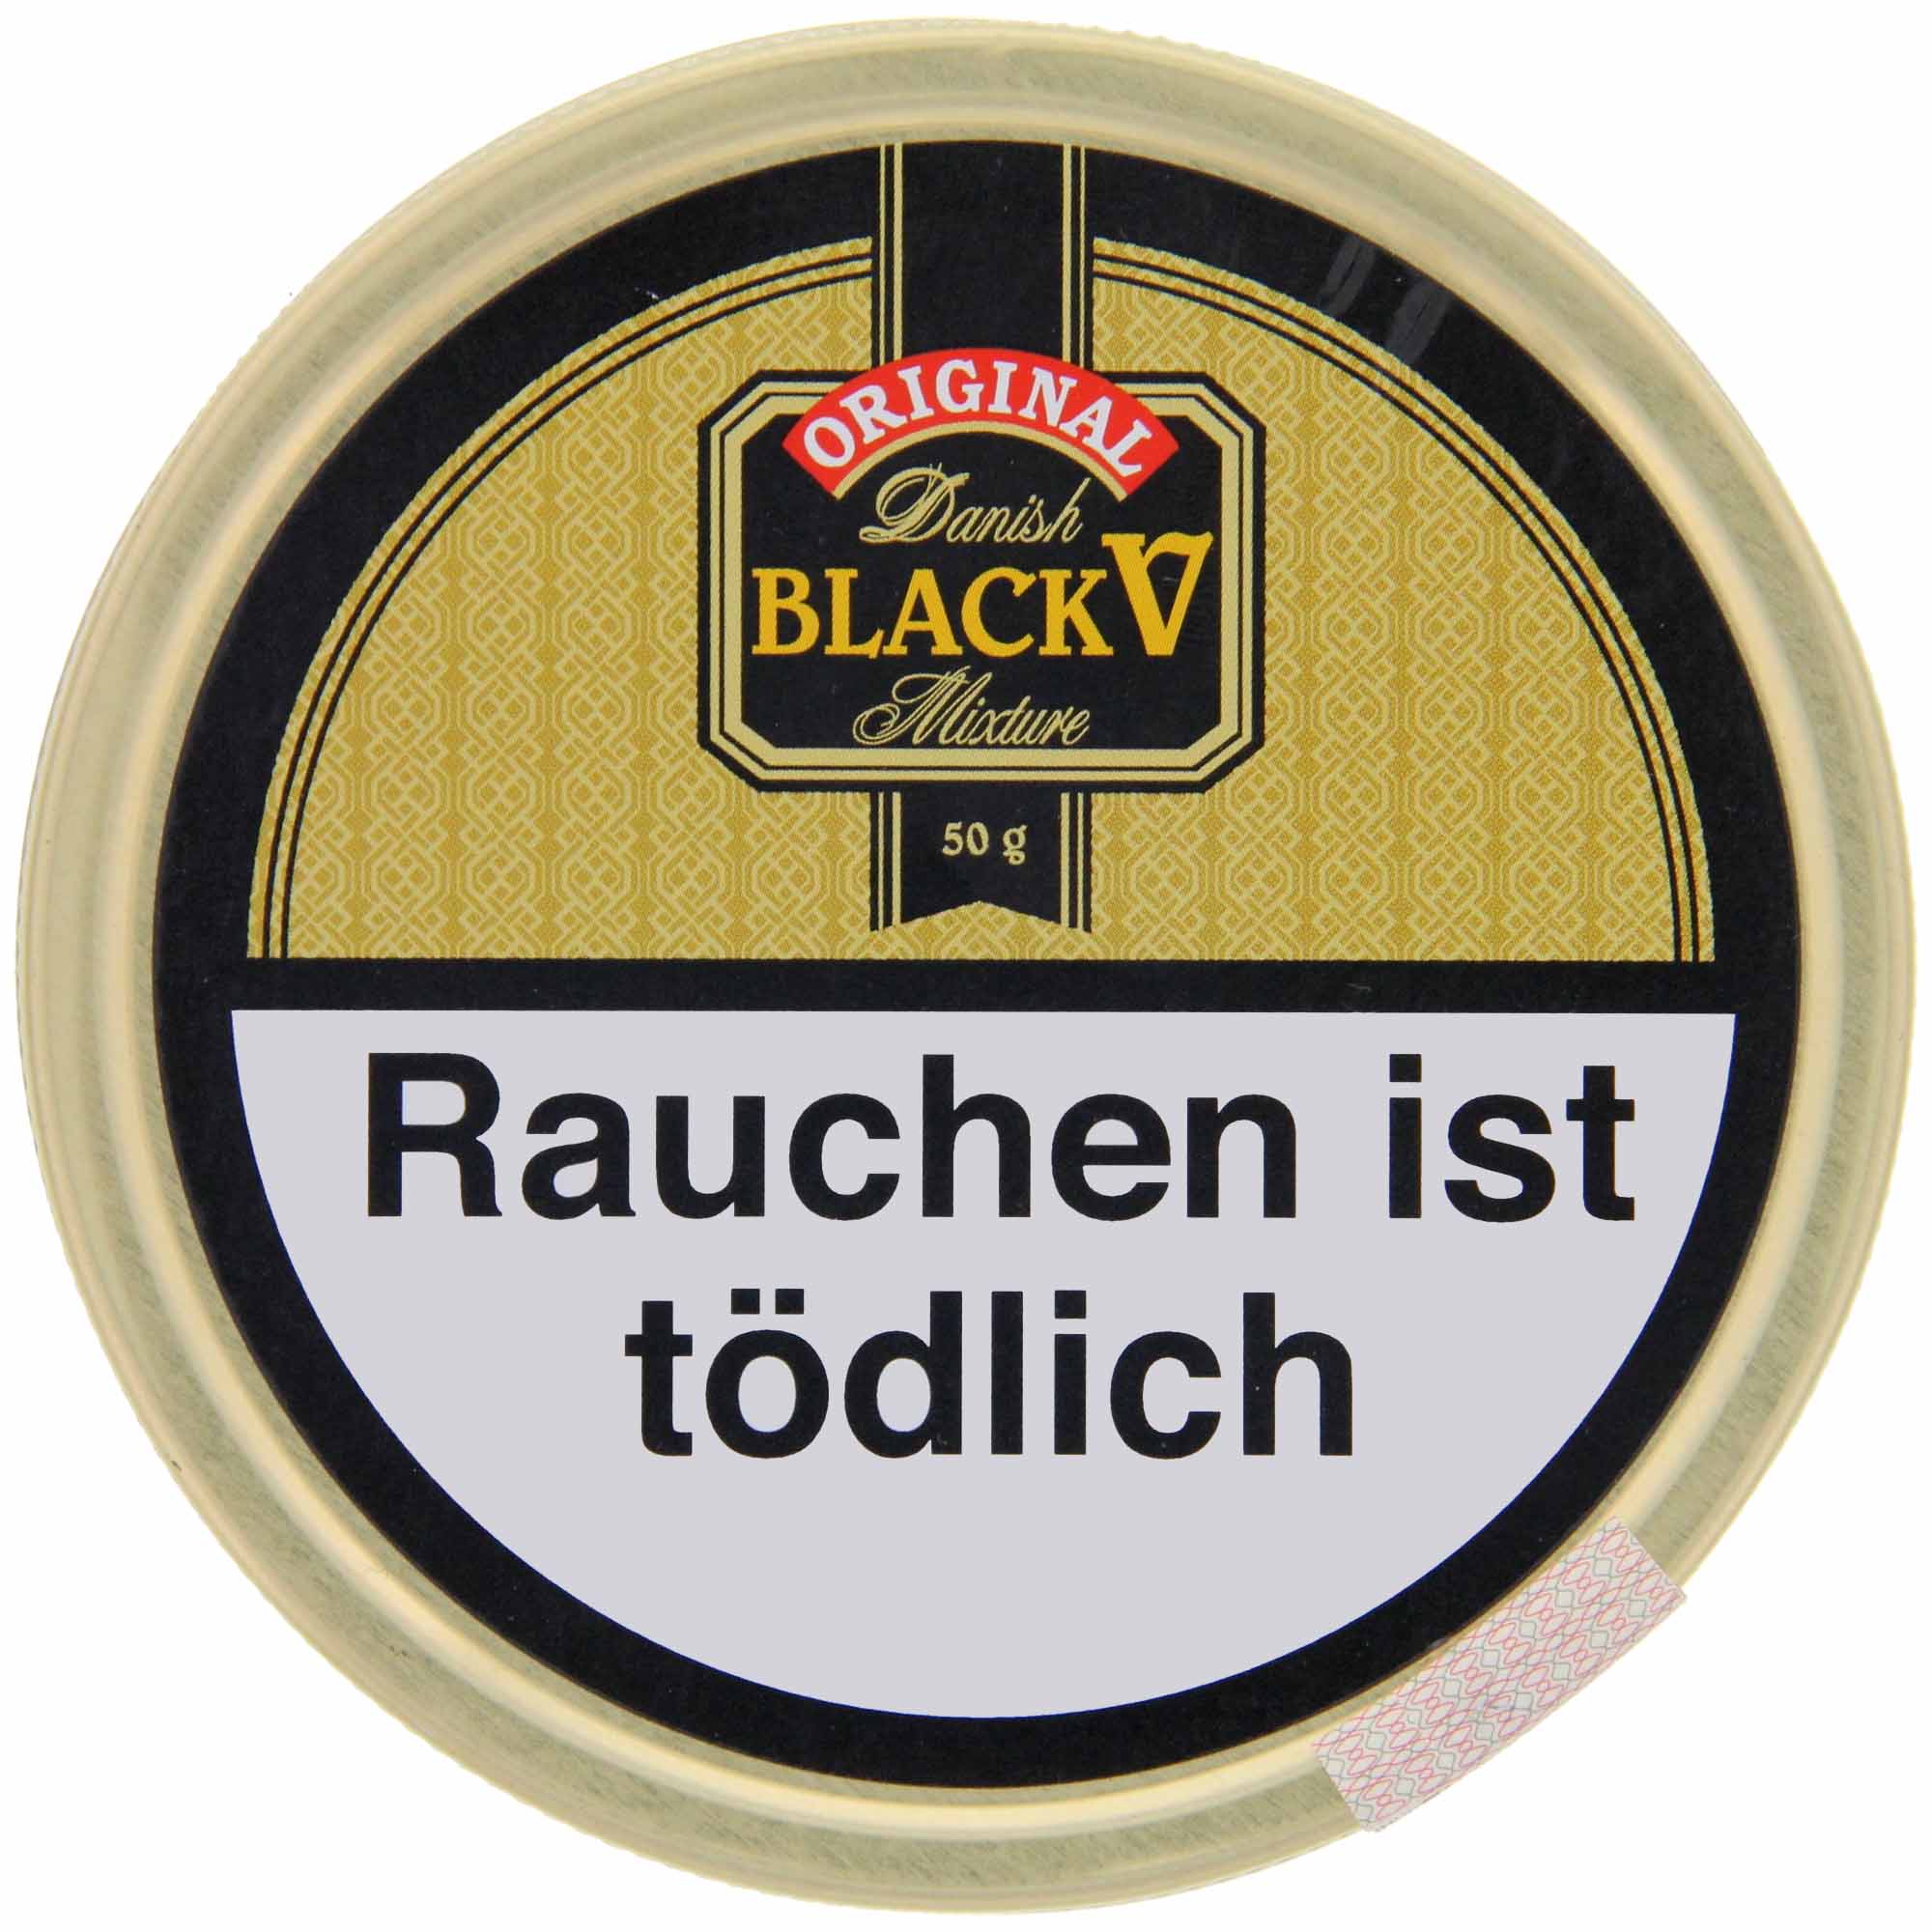 Danish Pfeifentabak Black Vanilla - 50g Tin